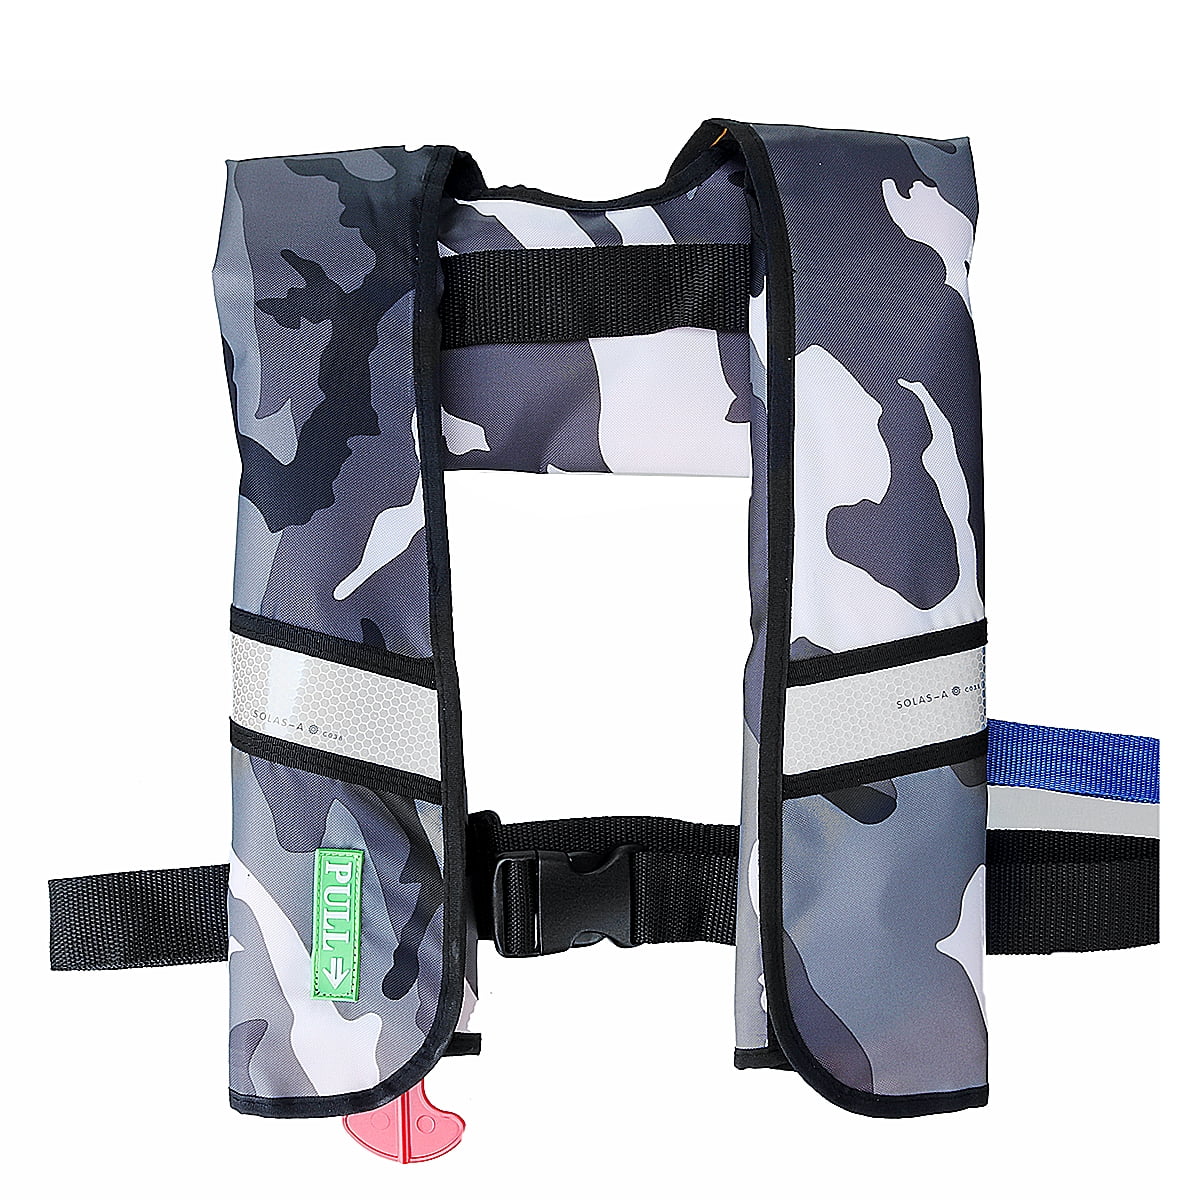 LOT-2-Automatic-Manuel-Life-Jacket-Vest-Auto-Inflatable-PFD-Survival-Flotation 